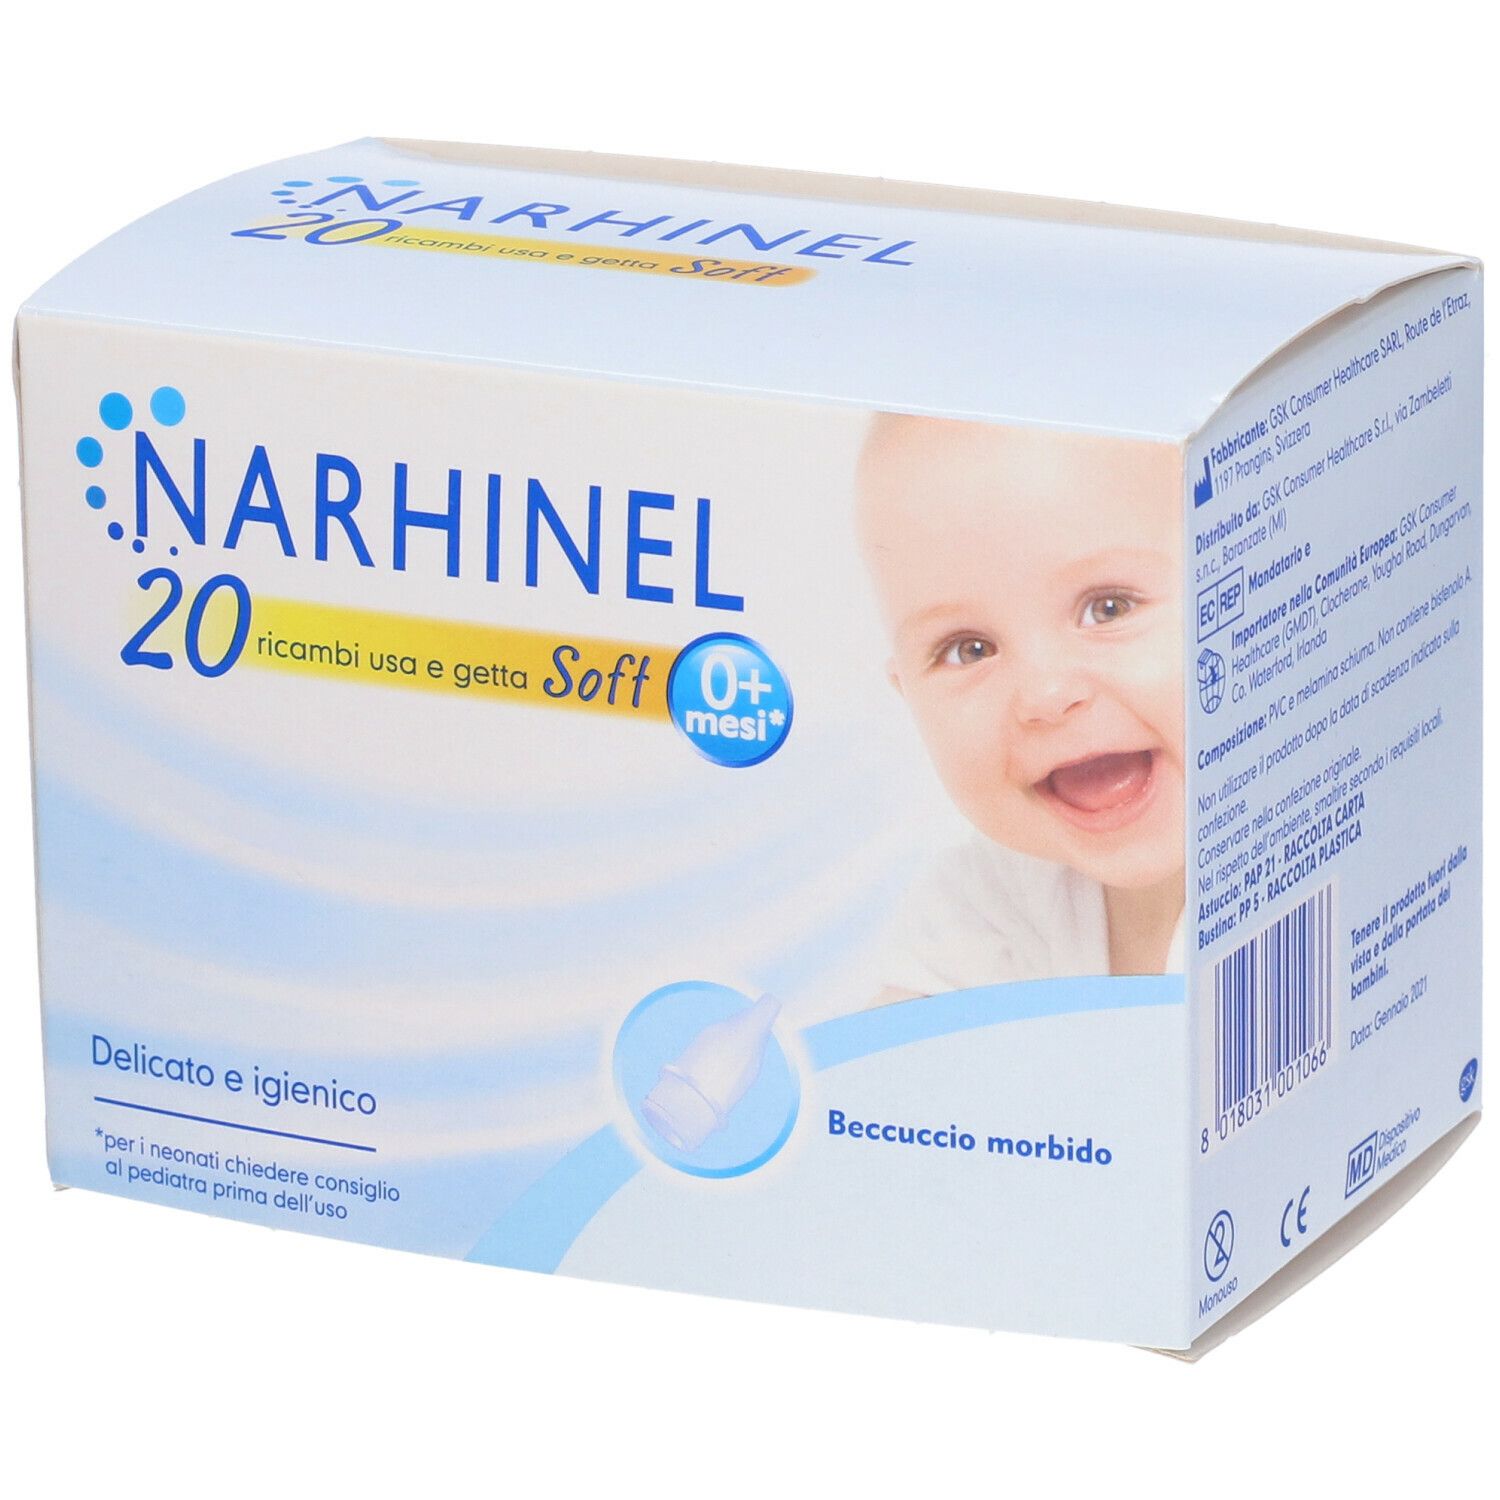 Narhinel ® Ricambi usa e getta Soft 20 pz Altro